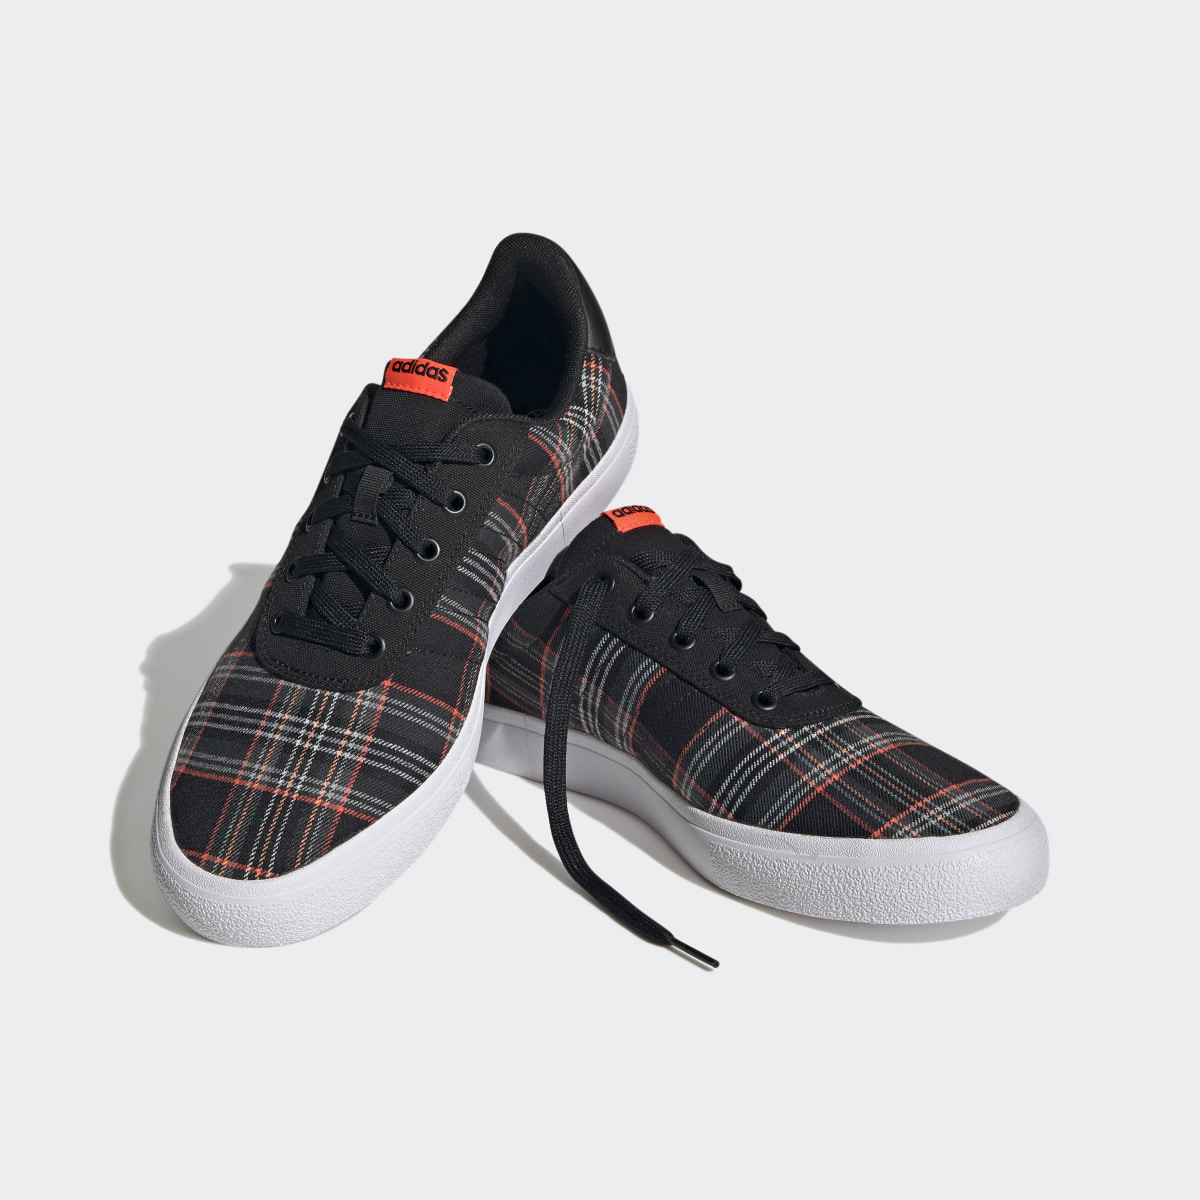 Adidas Chaussure Vulc Raid3r Lifestyle Skateboarding 3-Stripes Branding. 5